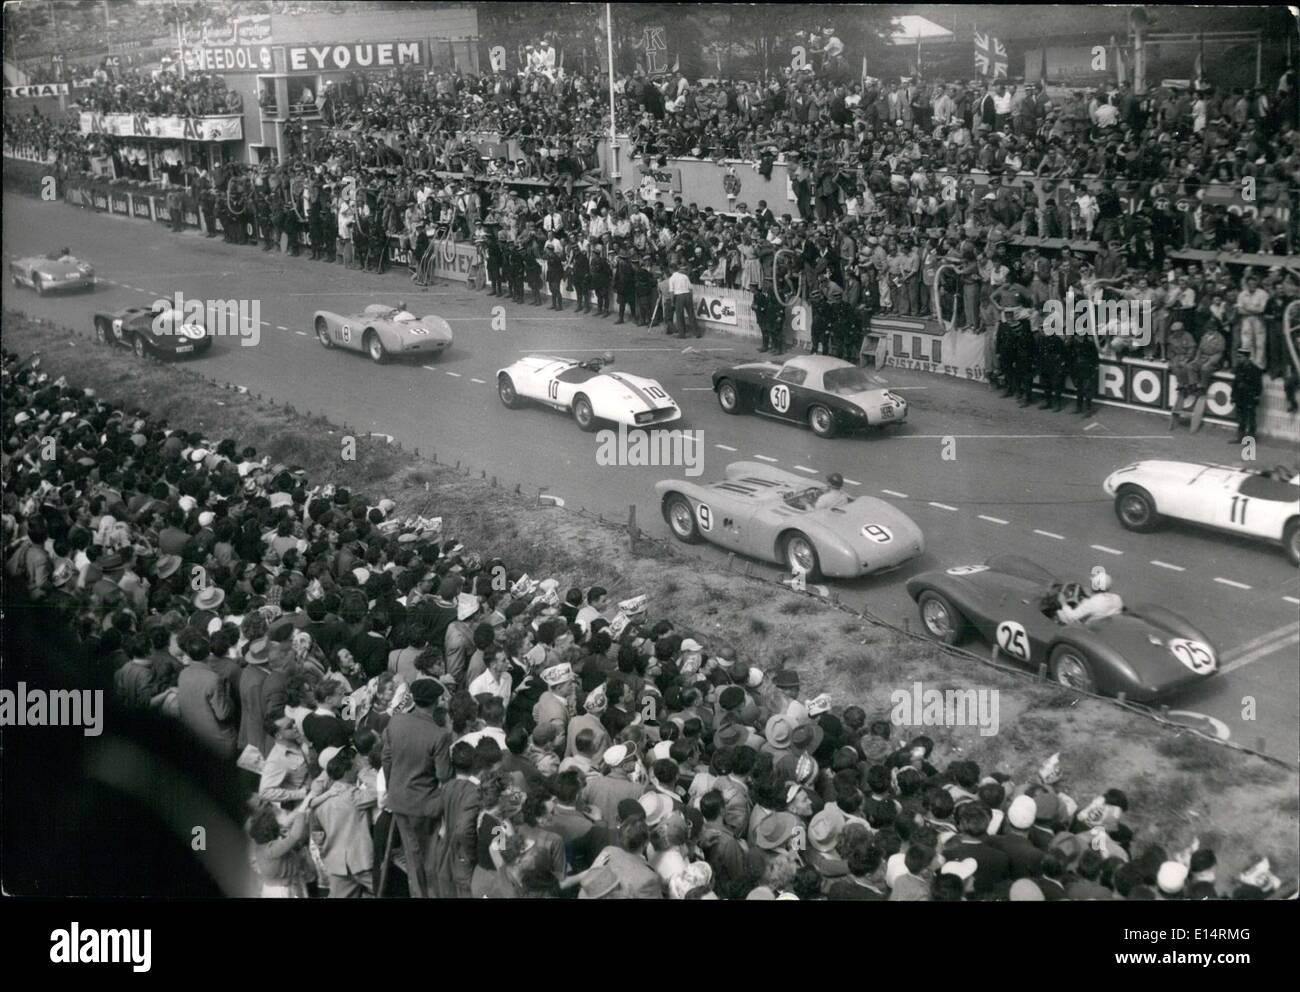 Avril 18, 2012 - La voiture gagne 24 Heures du Mans : les voitures de course de vitesse dans le carburant. La voiture gagnante (Jaguar No 18) est vu dans l'arrière-plan. Banque D'Images